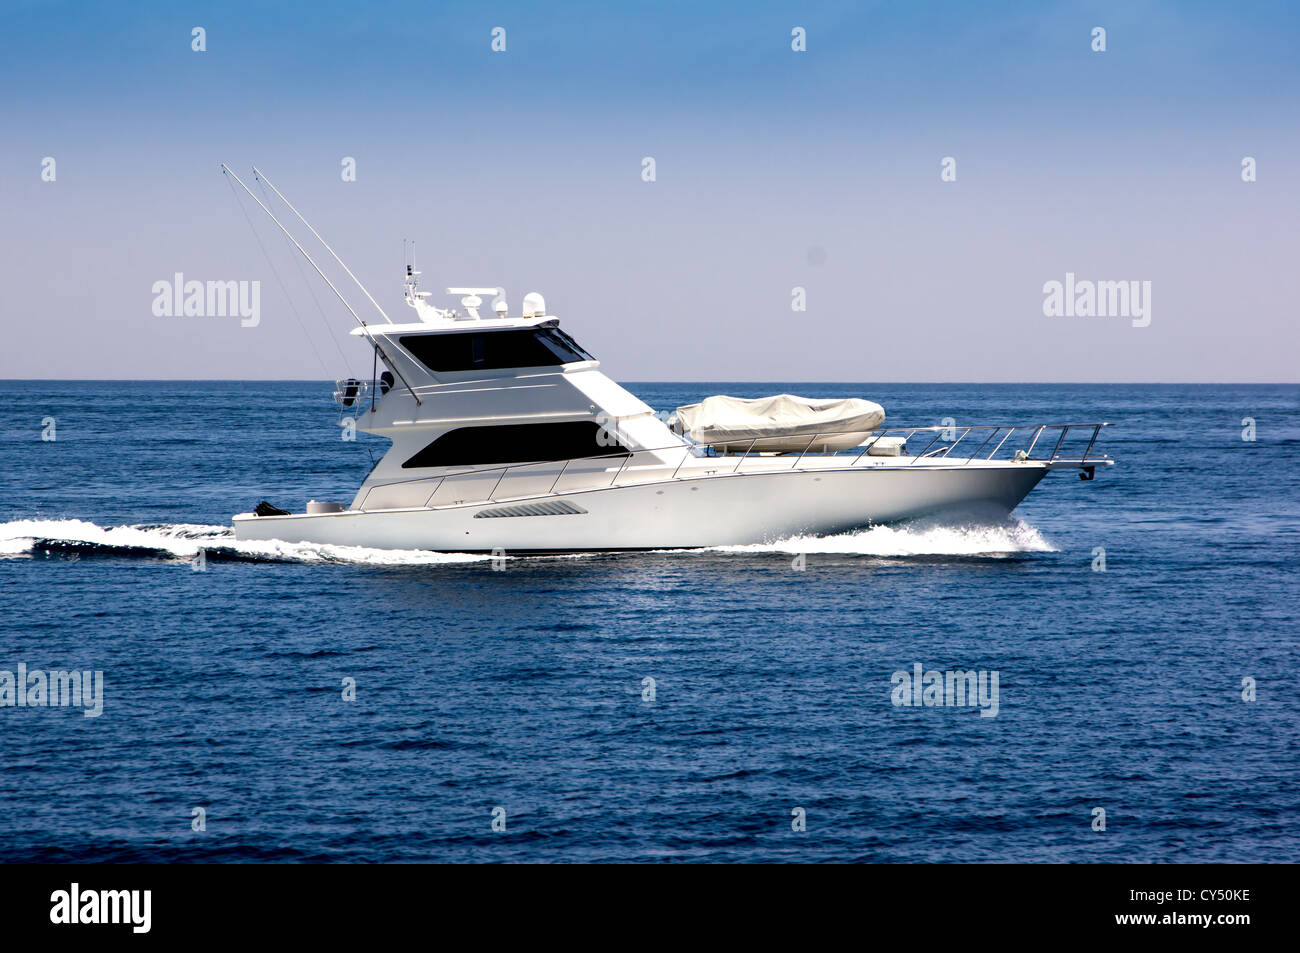 https://c8.alamy.com/comp/CY50KE/white-sportfisher-yacht-underway-CY50KE.jpg